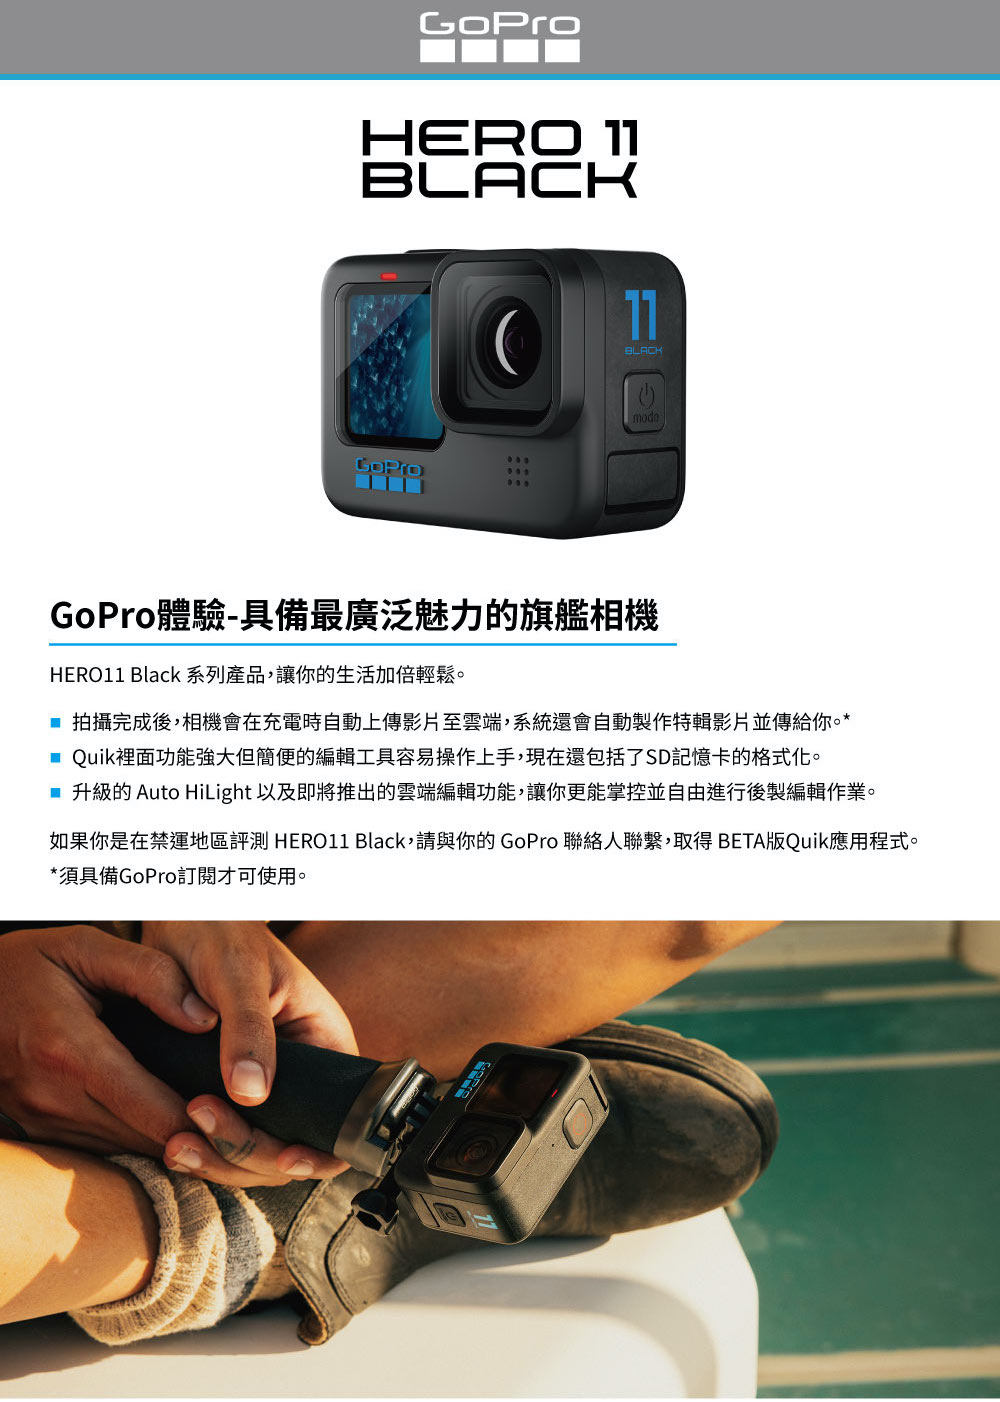 出租]GoPro HERO 11 Black 全方位運動攝影機單機組CHDHX-111-RW - 杰客森林